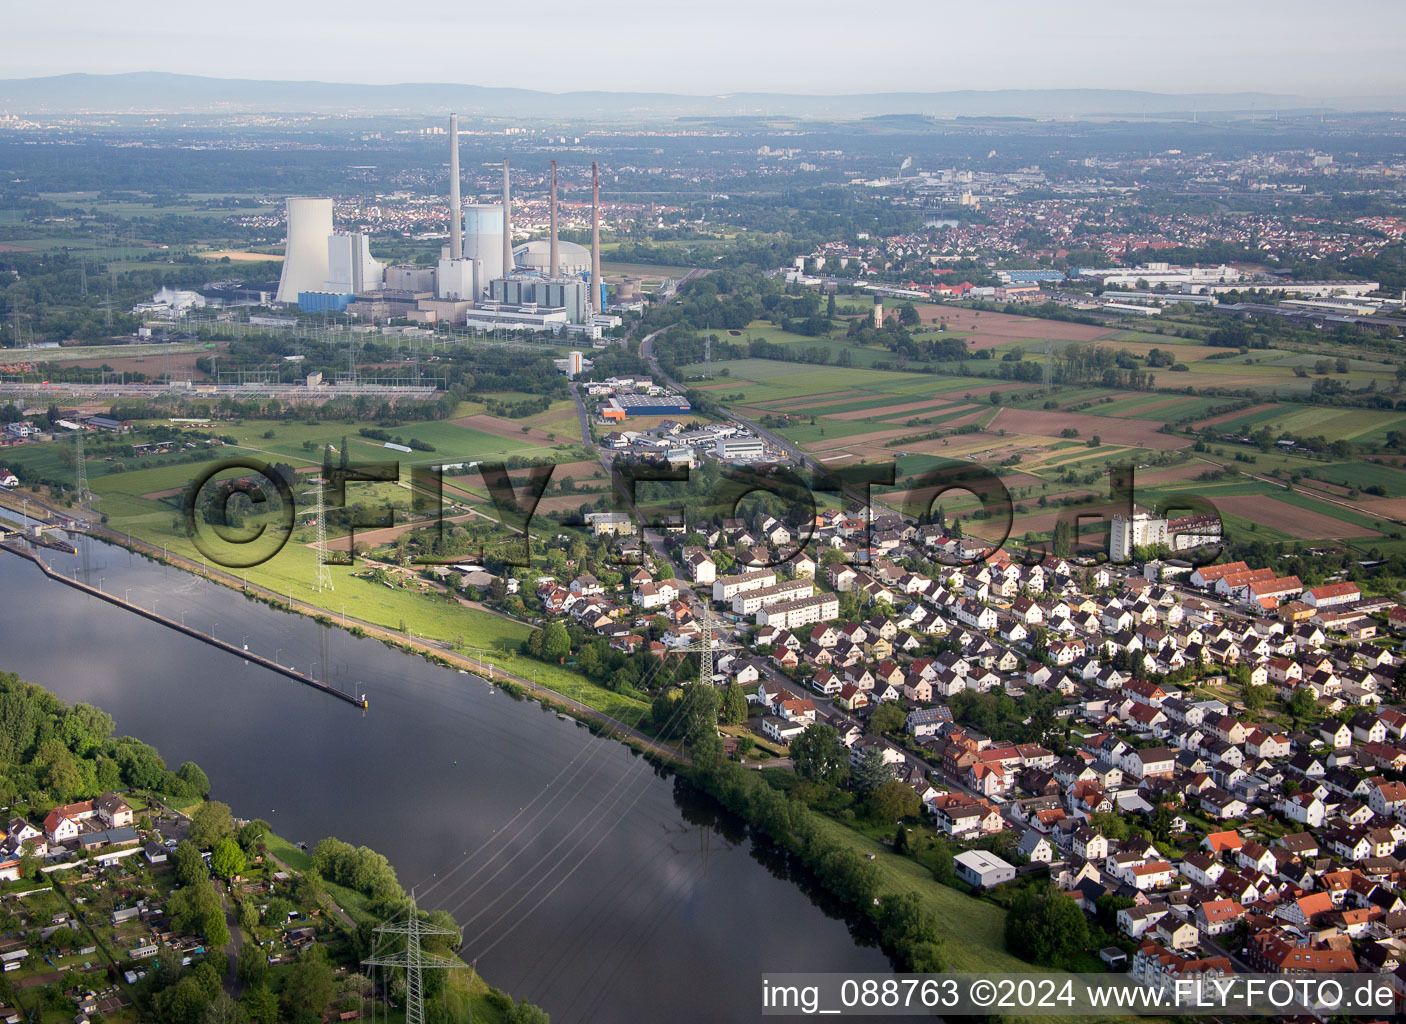 Reaktorblöcke, Kühlturmbauwerke und Anlagen des Kohle- und Gaskraftwerks Kraftwerk Staudinger in Großkrotzenburg im Bundesland Hessen, Deutschland